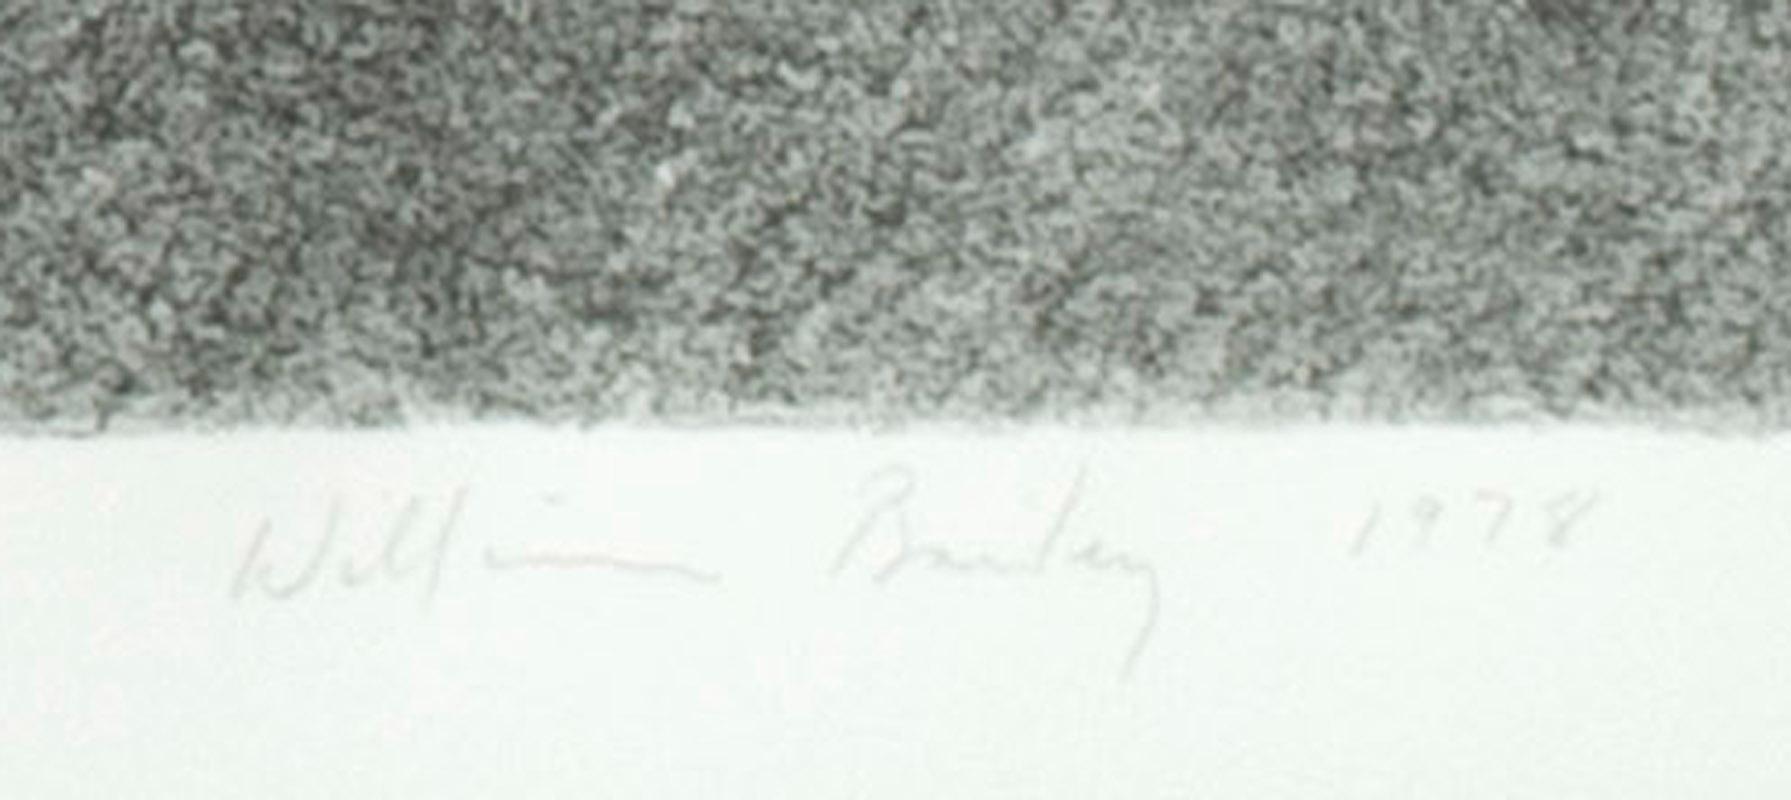 Nature morte n° 5
Lithographie, 1978
Signé, daté et numéroté au crayon (voir photos)
Edition : 50 (24/50)
Publié par Solo Press, New York, 1978
Imprimeur : Judith Solodkin, première femme maître imprimeur diplômée de l'Institut Tamarind.
Condit :